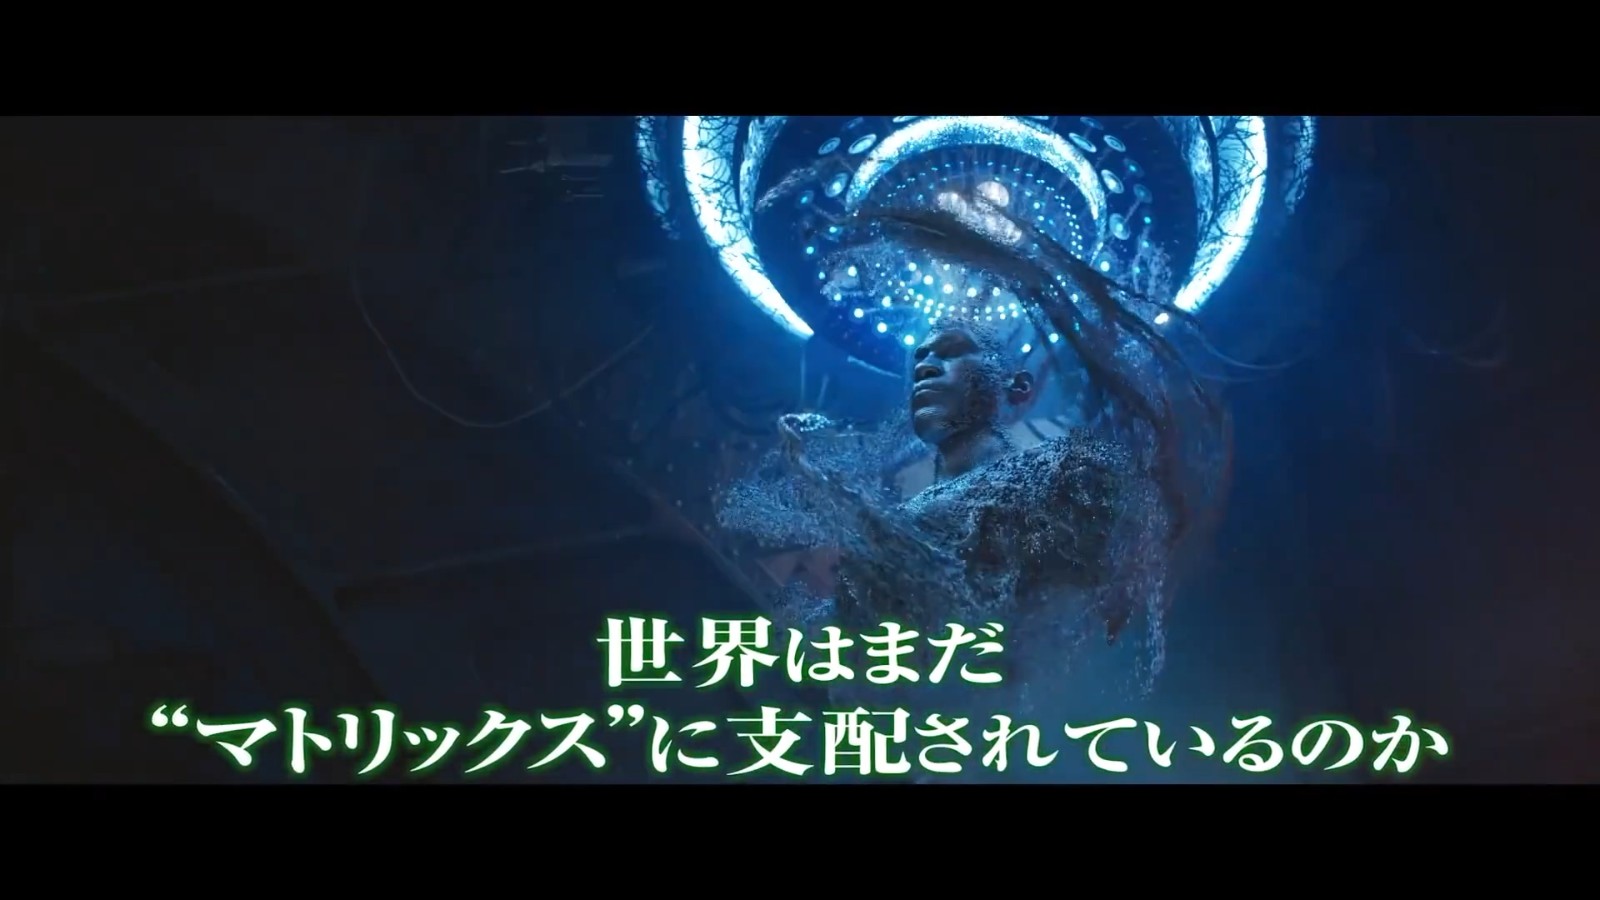 《黑客帝国4》新电视广告 基努里维斯向日本观众问好